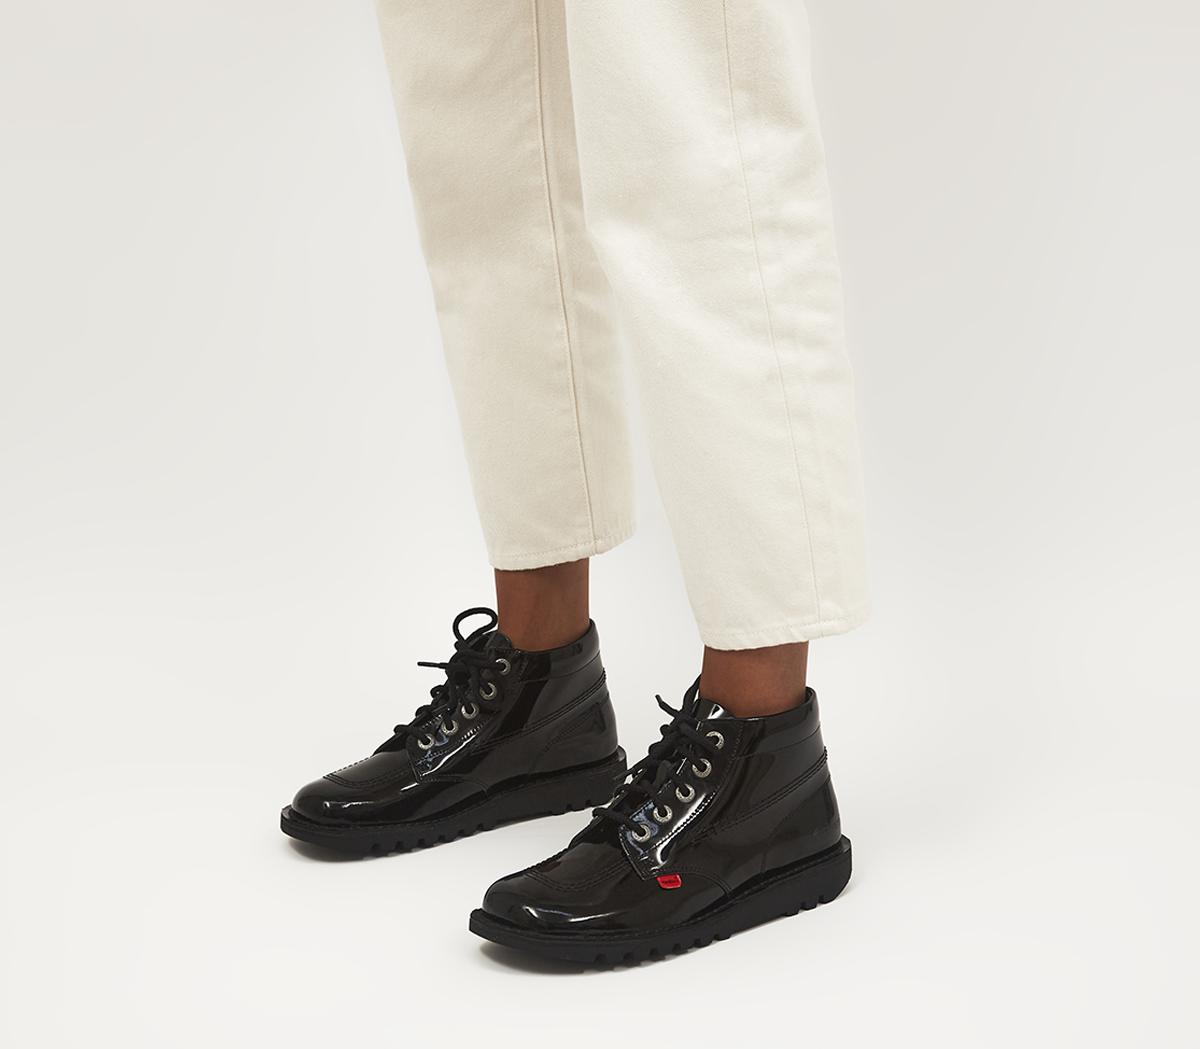 Kruiden verbinding verbroken Ontoegankelijk Kickers Kick Hi Boots Black Patent - Flat Shoes for Women